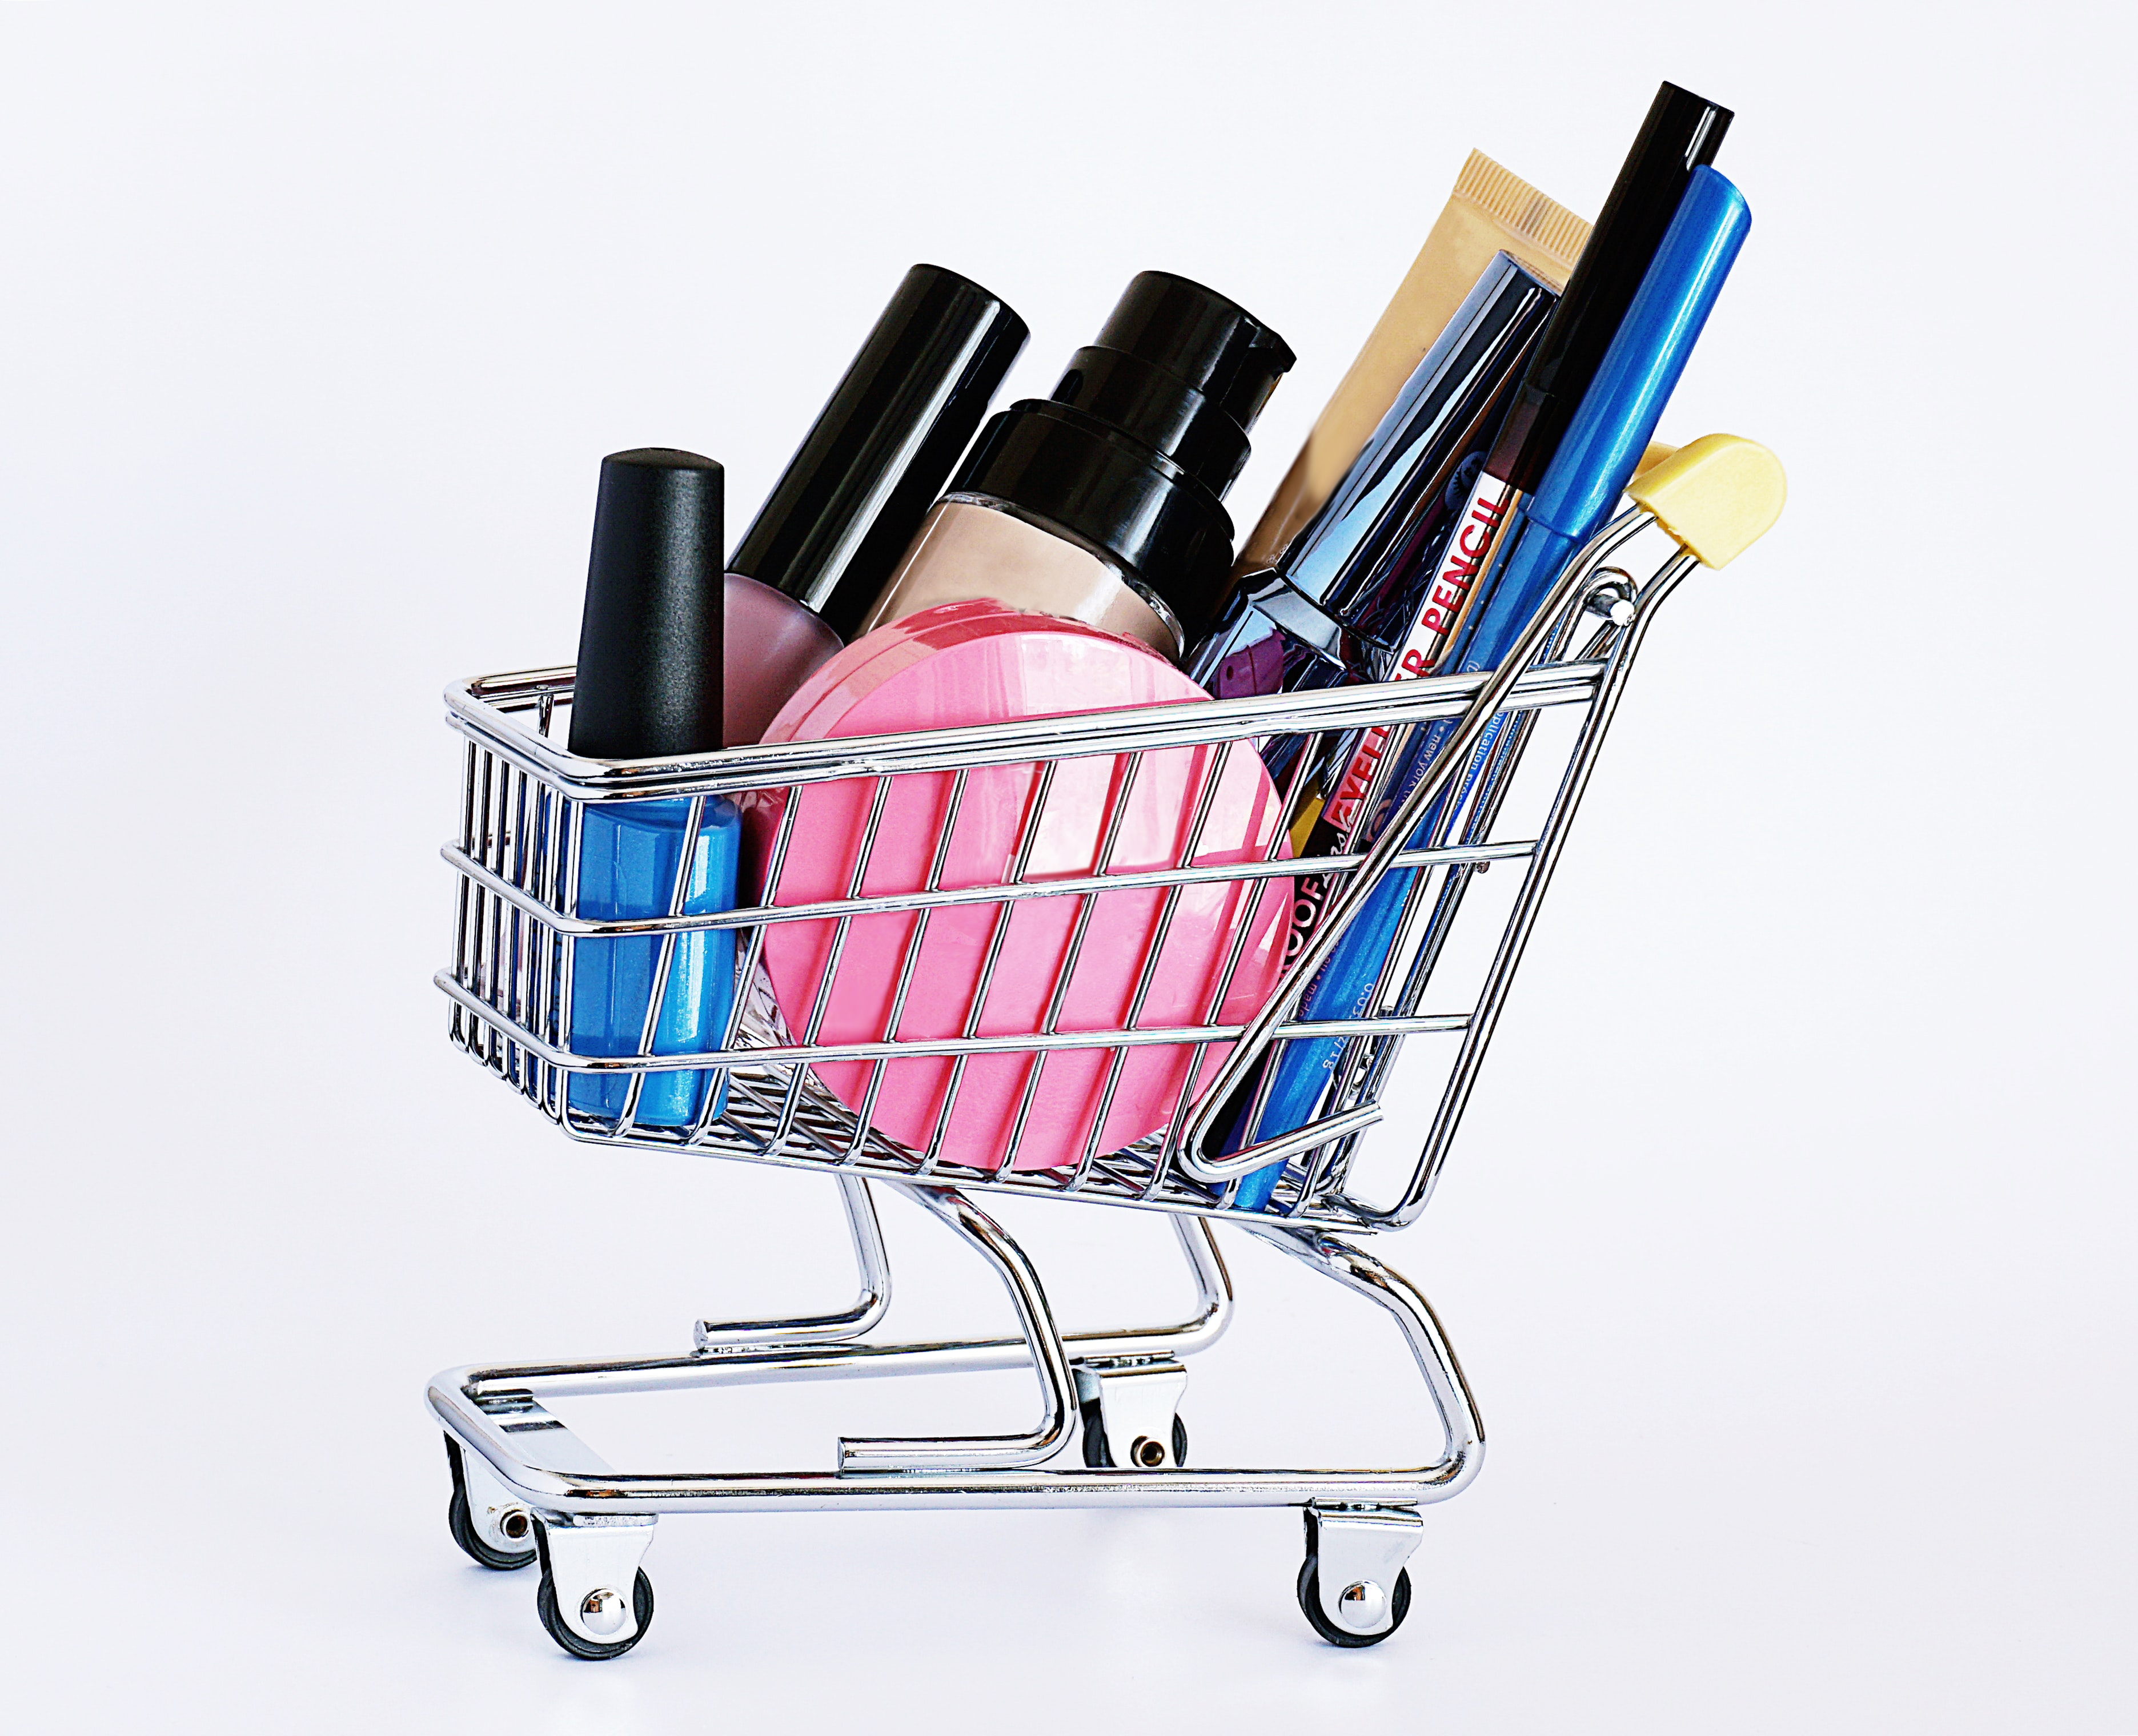 Saiba como montar uma loja virtual de maquiagem de sucesso